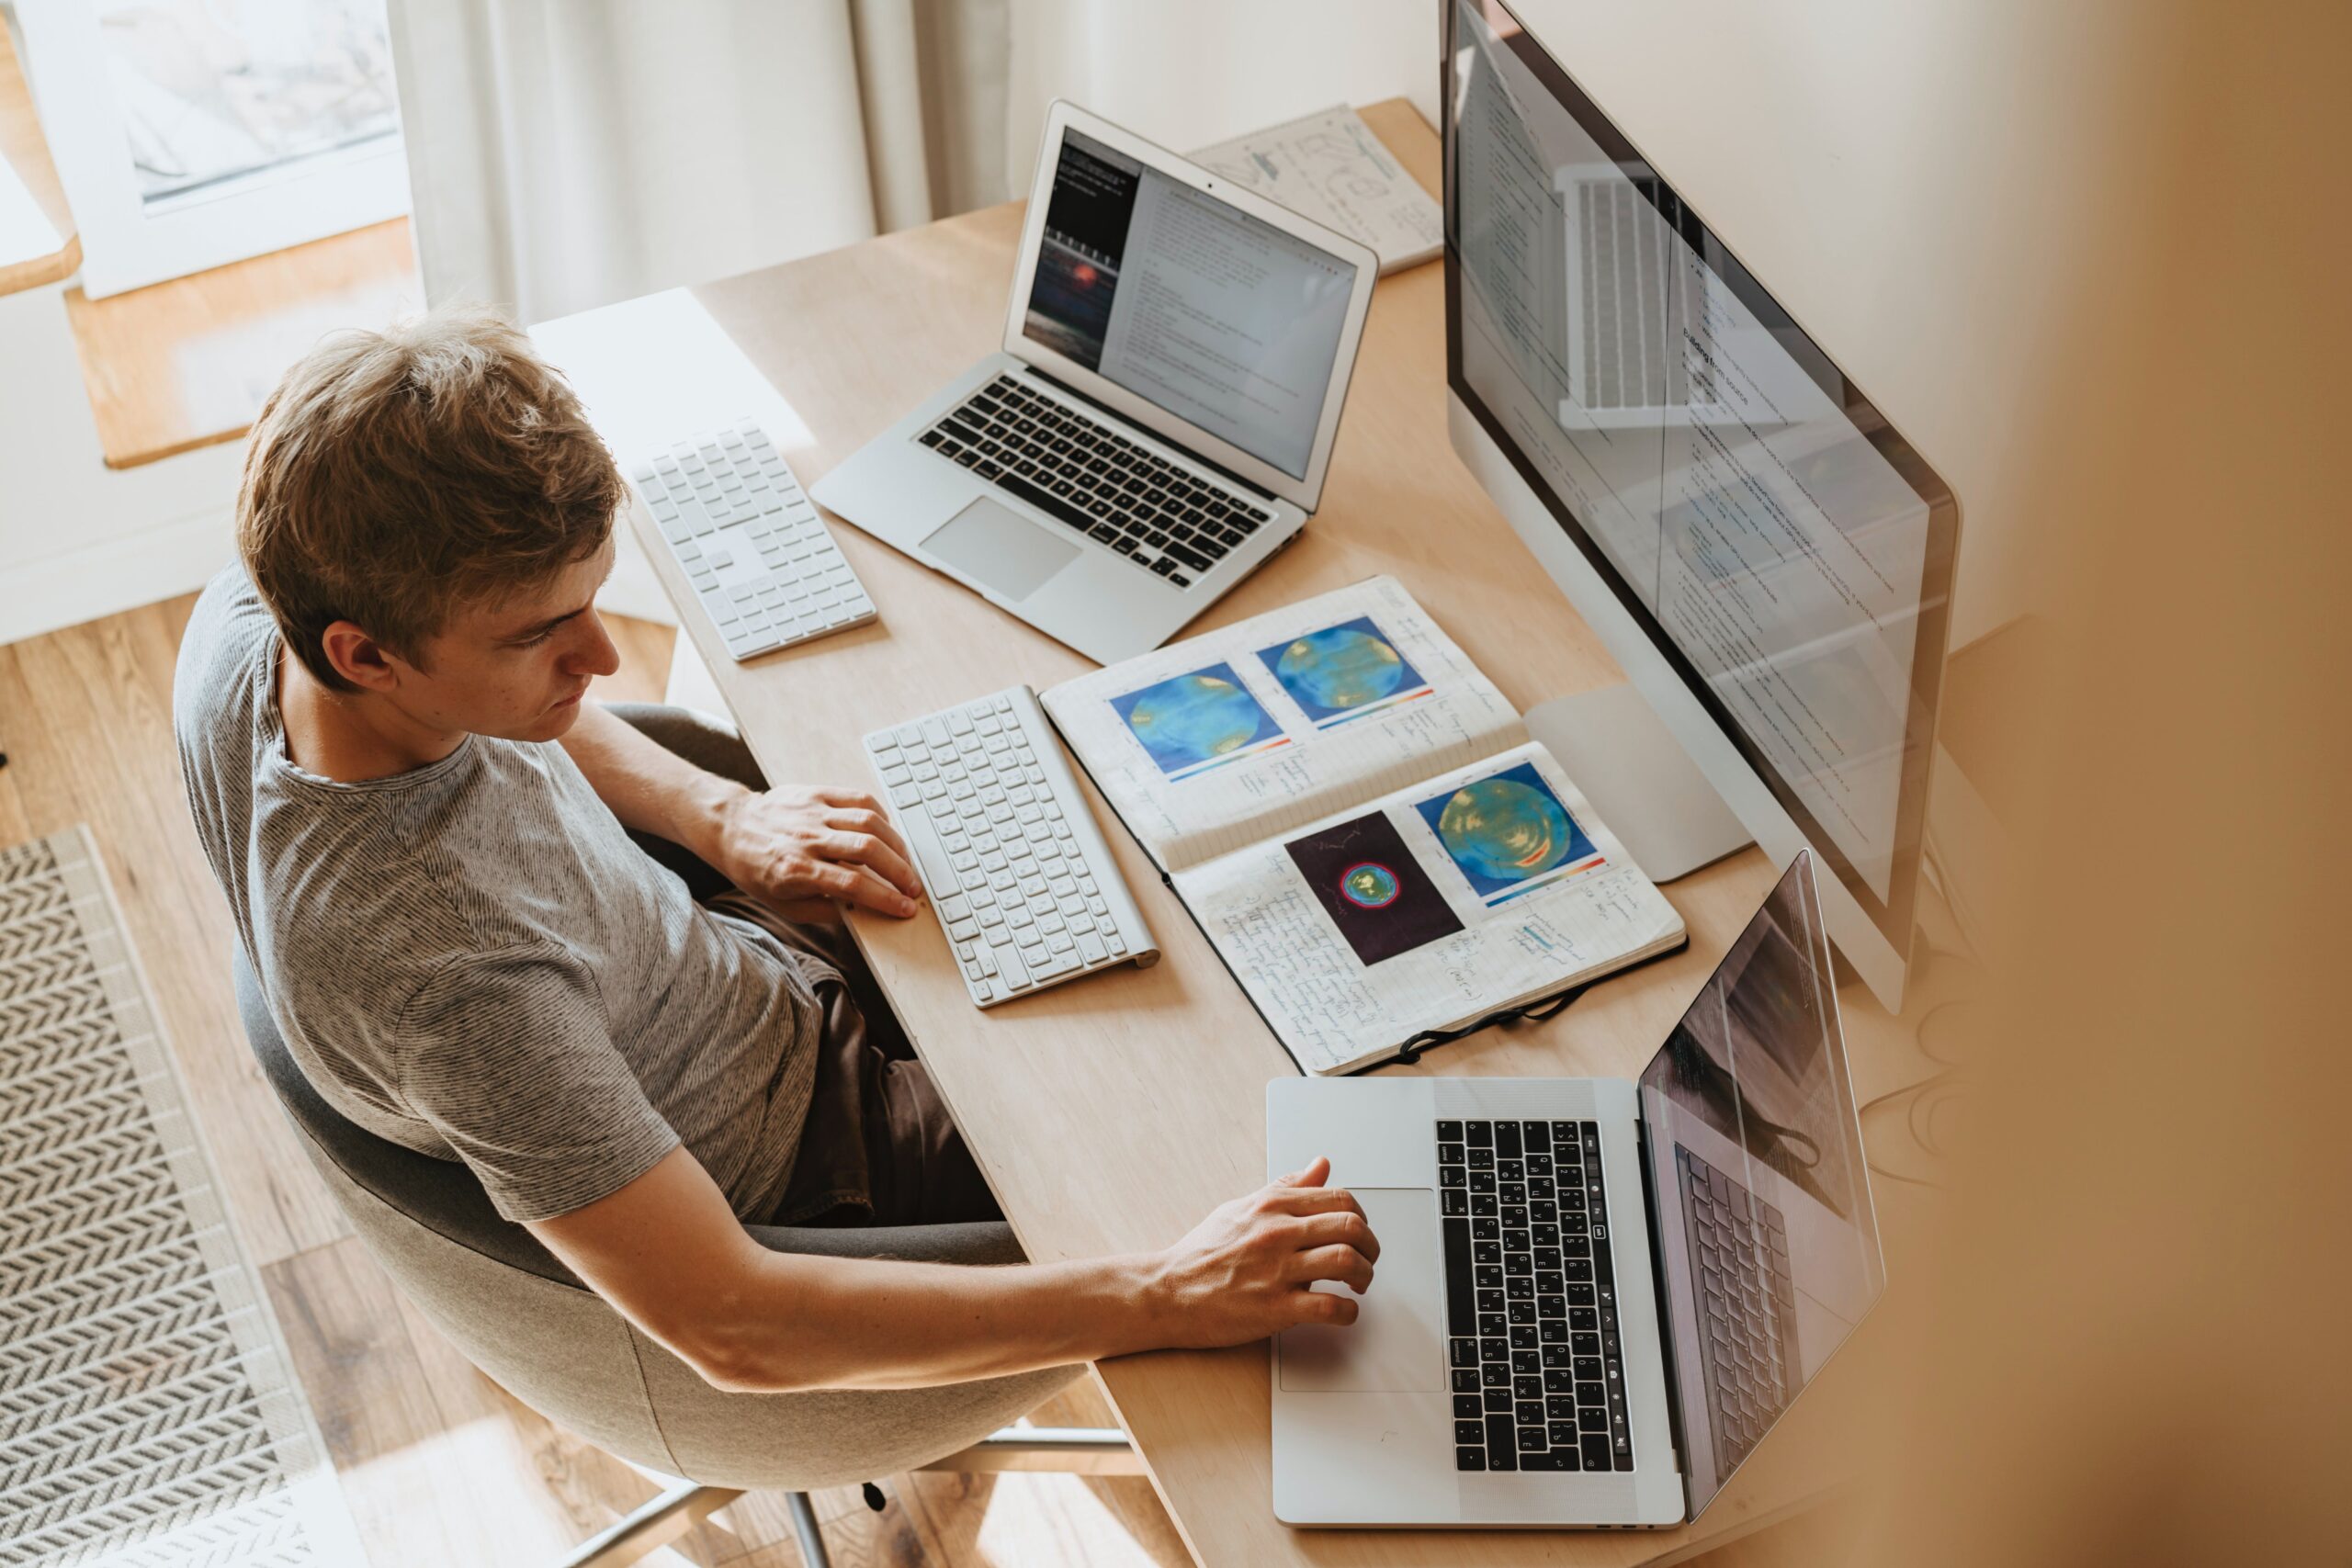 na imagem um homem sentando olhando para a tela de tres computadores ligados na sua frente passando a impressao de estar focado em seus estudos online ou trabalho